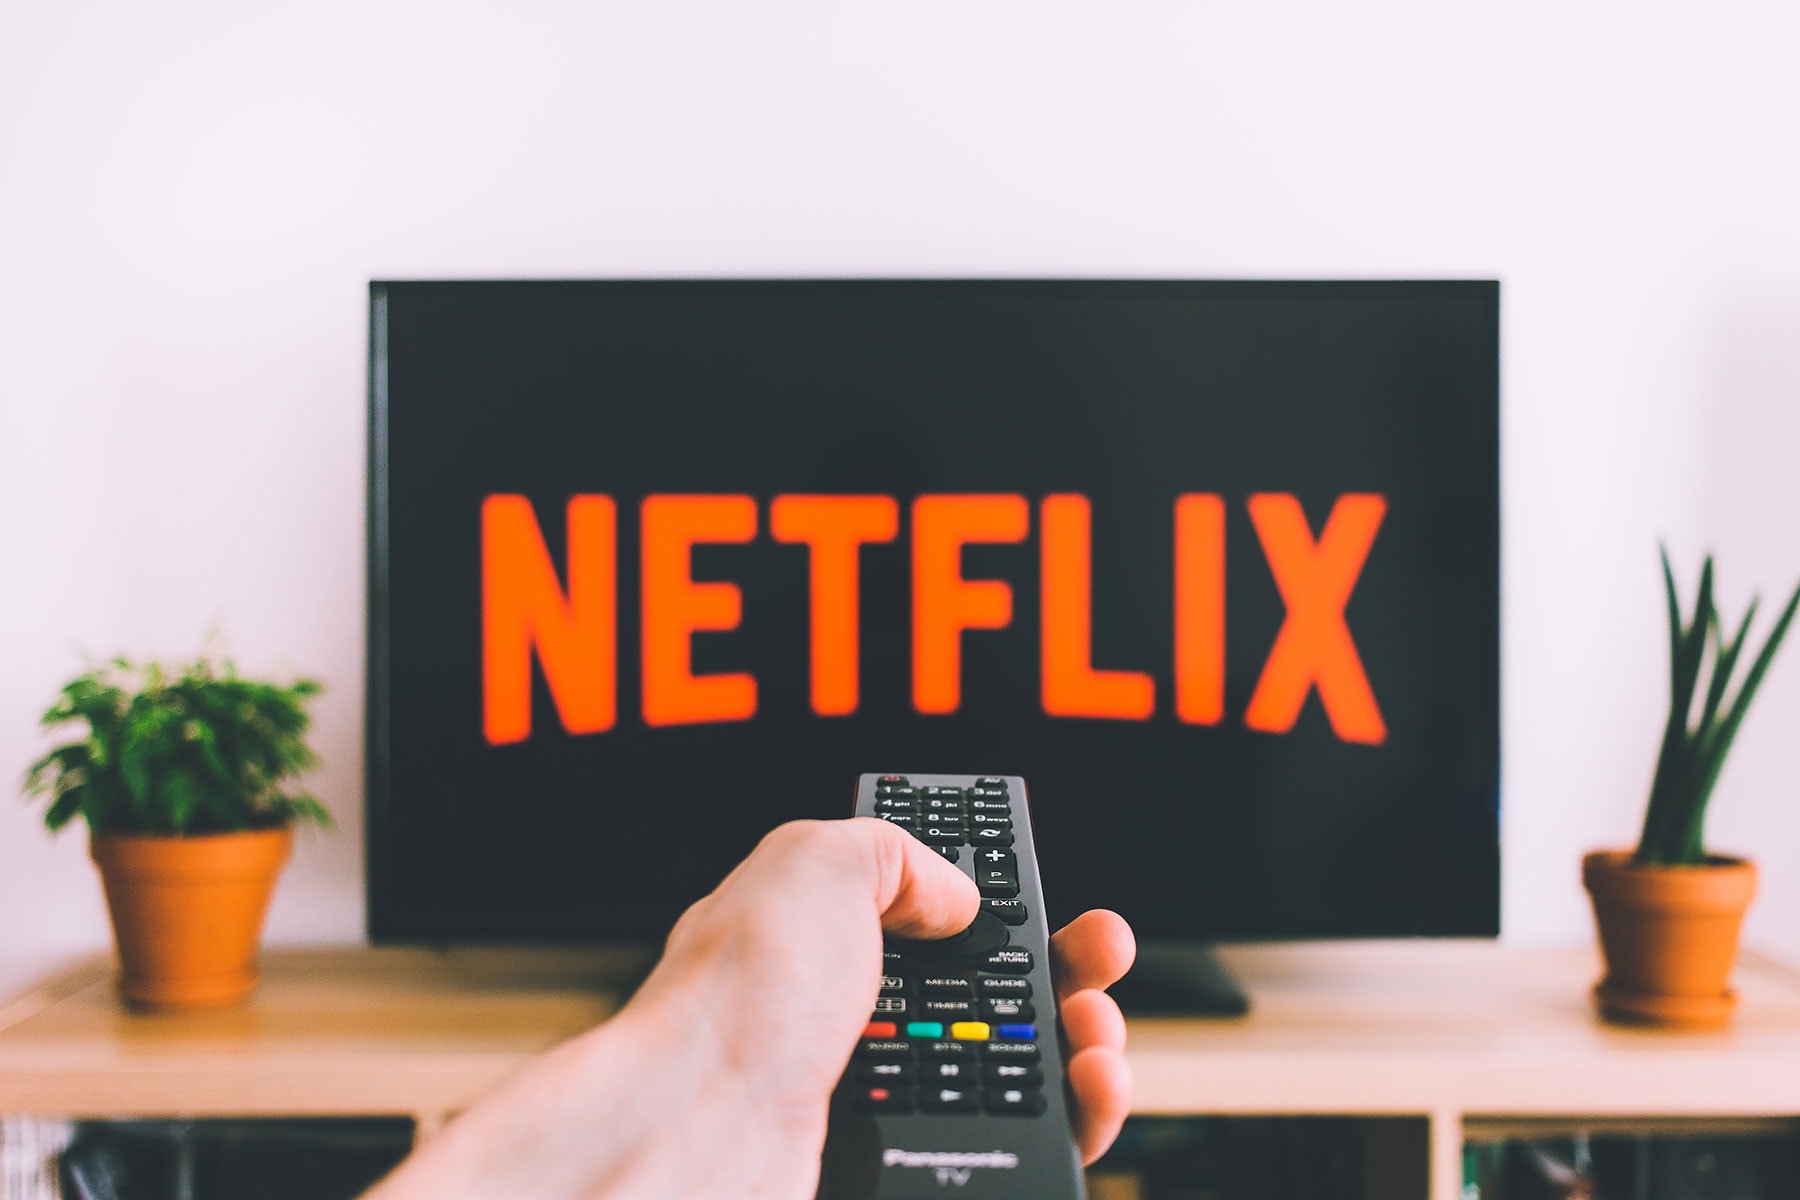 netflix 13 billion usd spend originals 2018 programming series 82 films